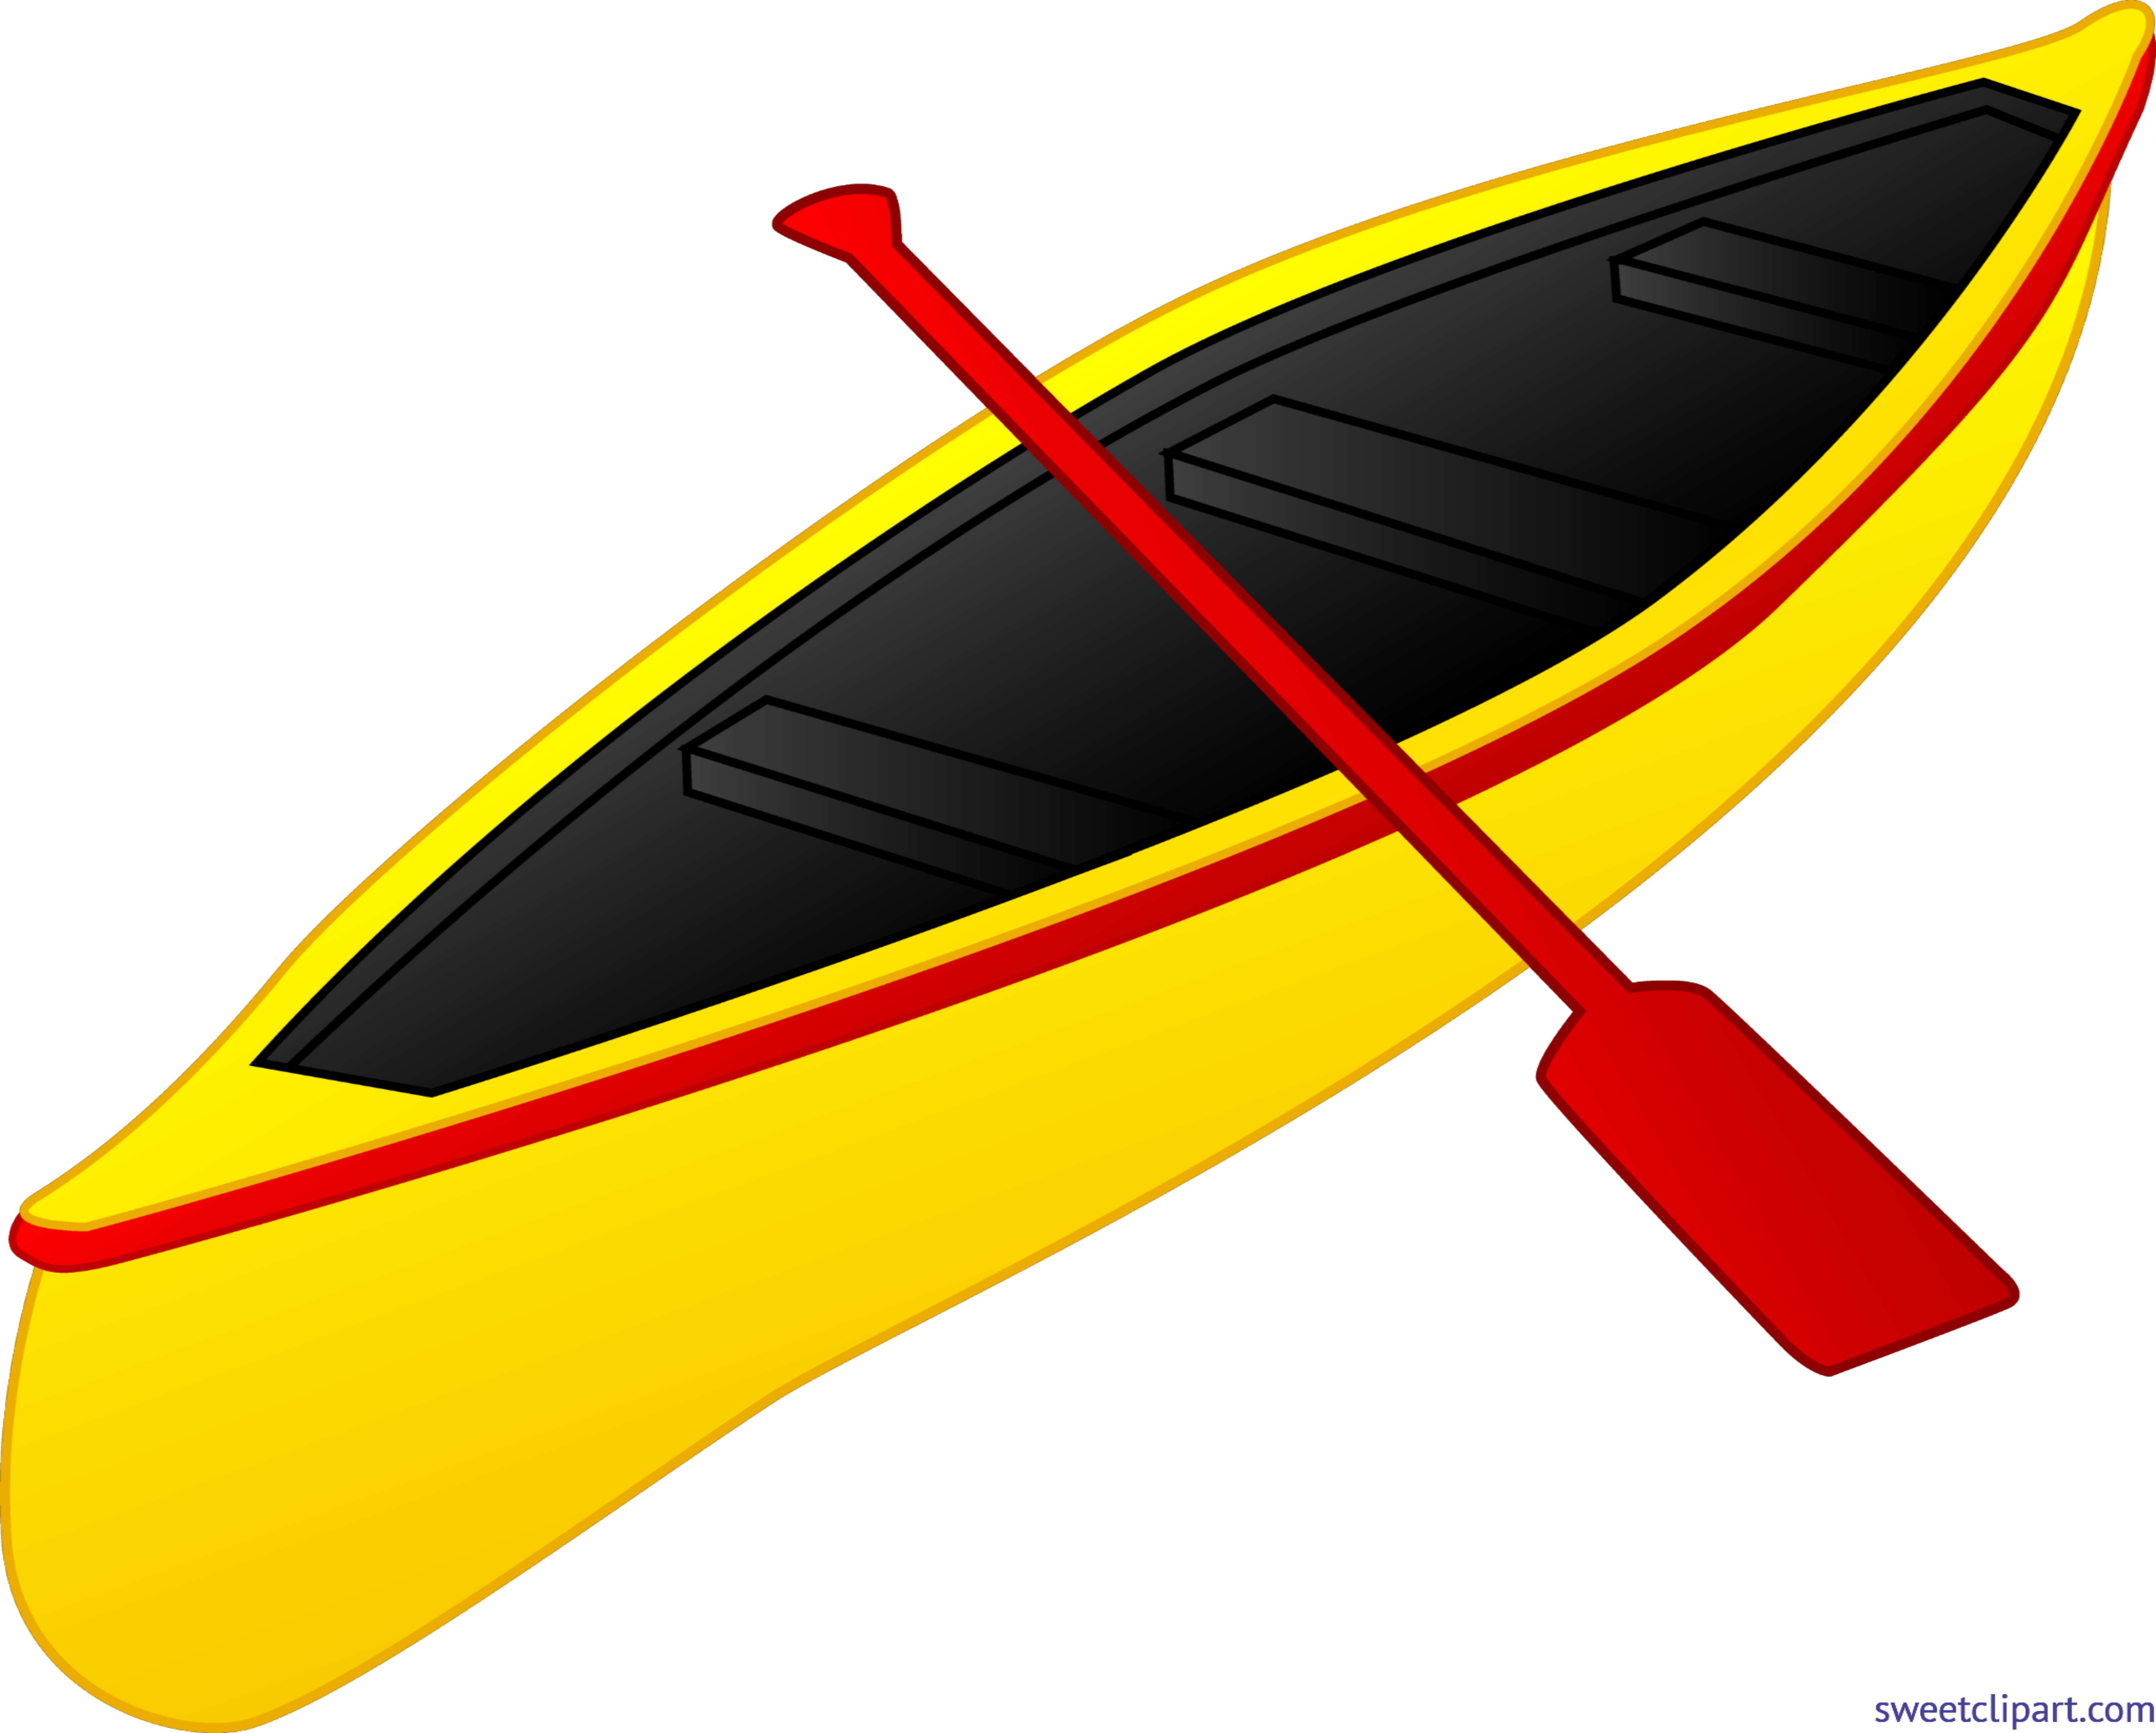 Kayaking clipart yellow boat. Kayak clip art sweet